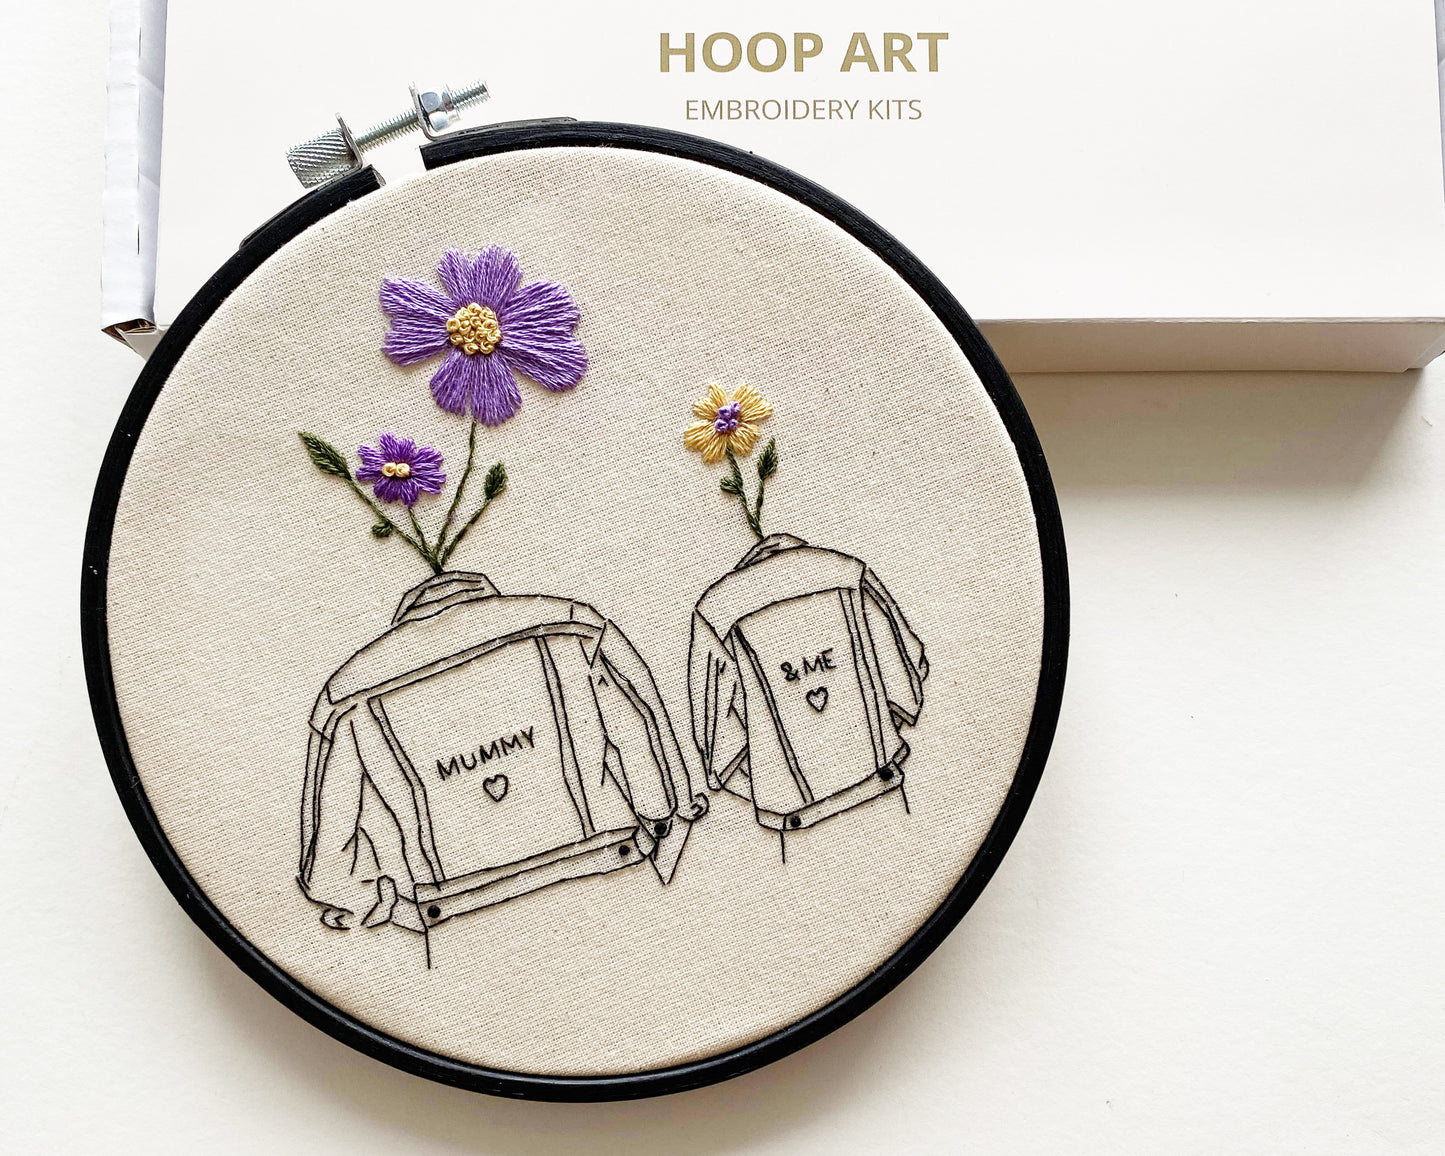 'Mummy & Me' Modern Embroidery Kit